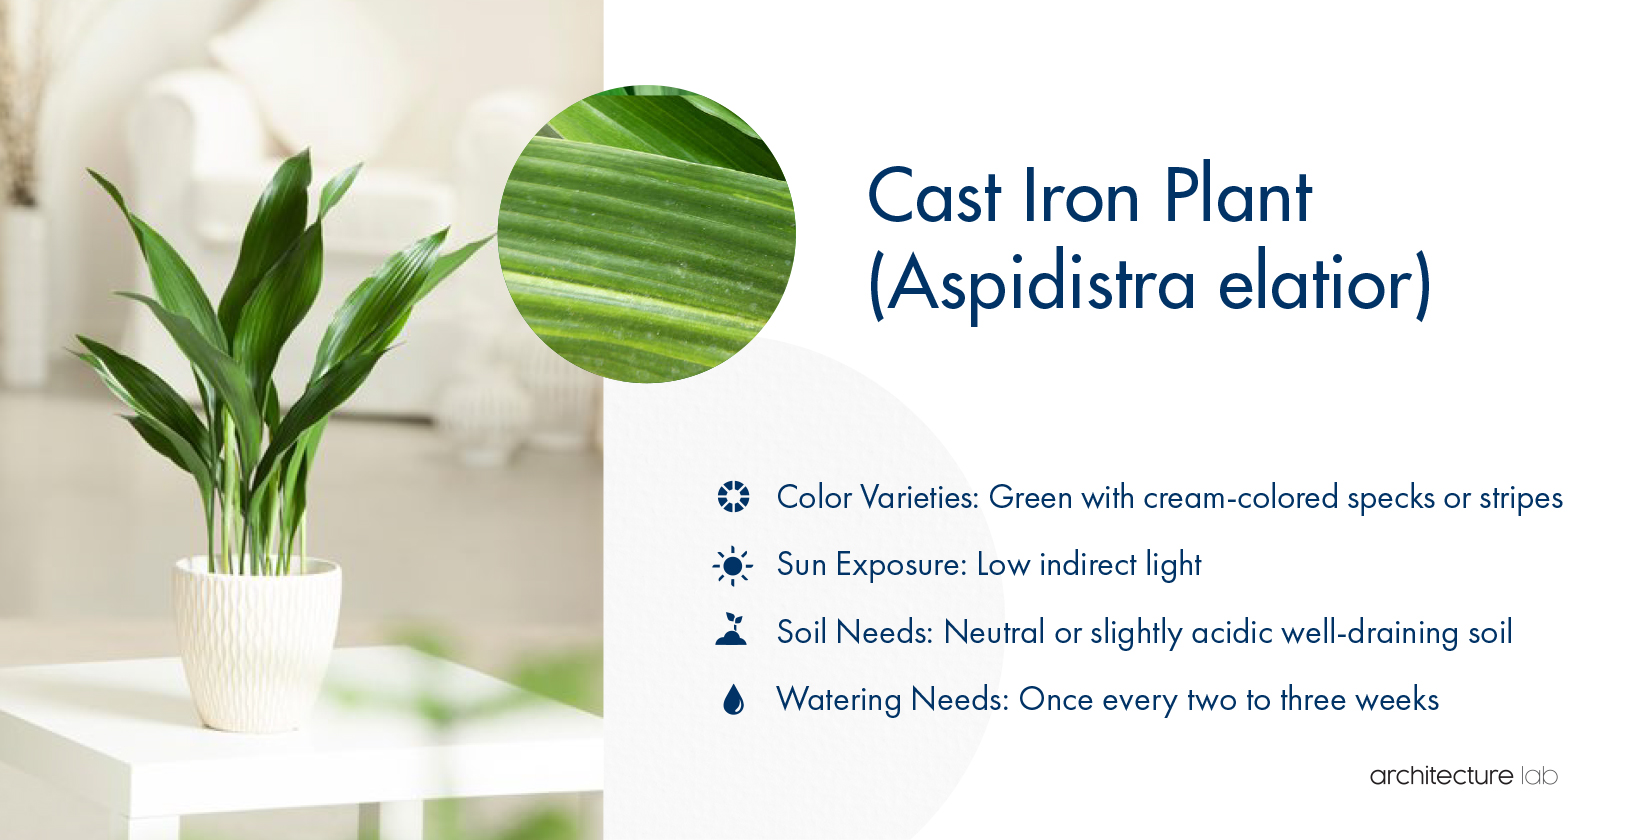 7. Cast iron plant (aspidistra elatior)